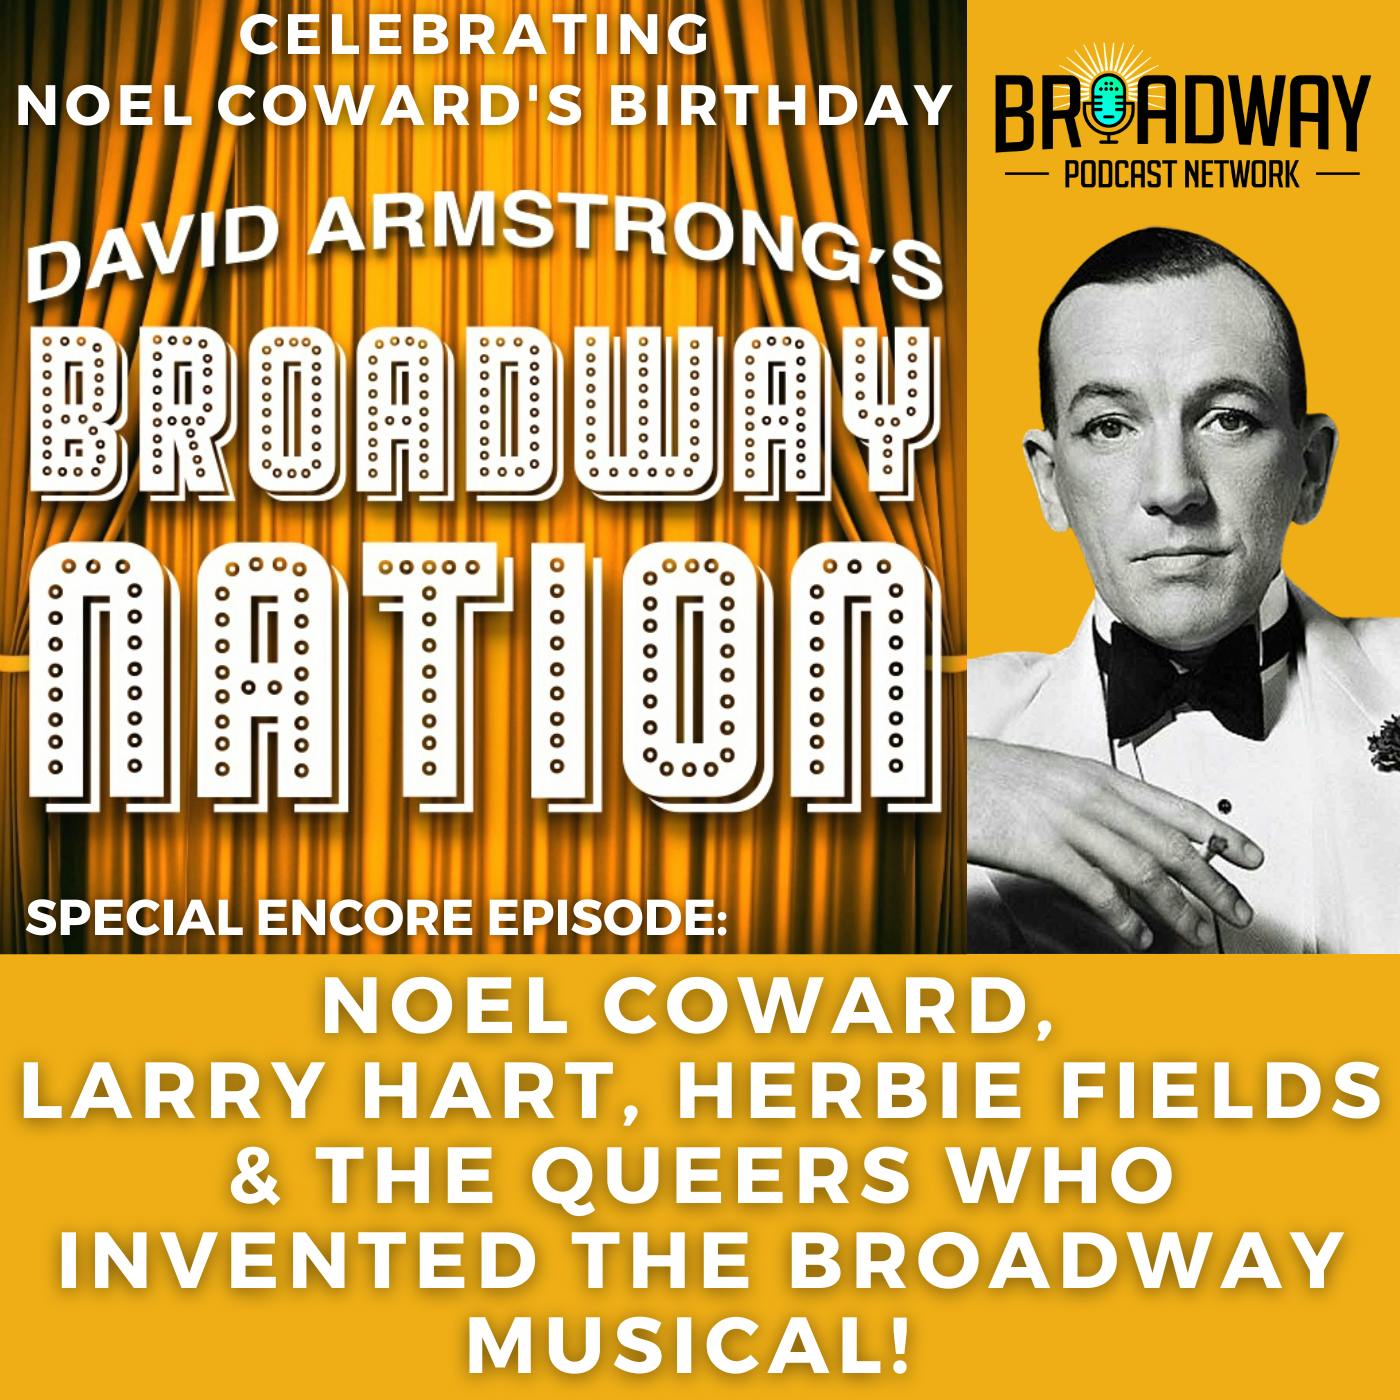 Special ENCORE Episode; Noel Coward, Larry Hart, Herbert Fields & The Queers Who Invented Broadway